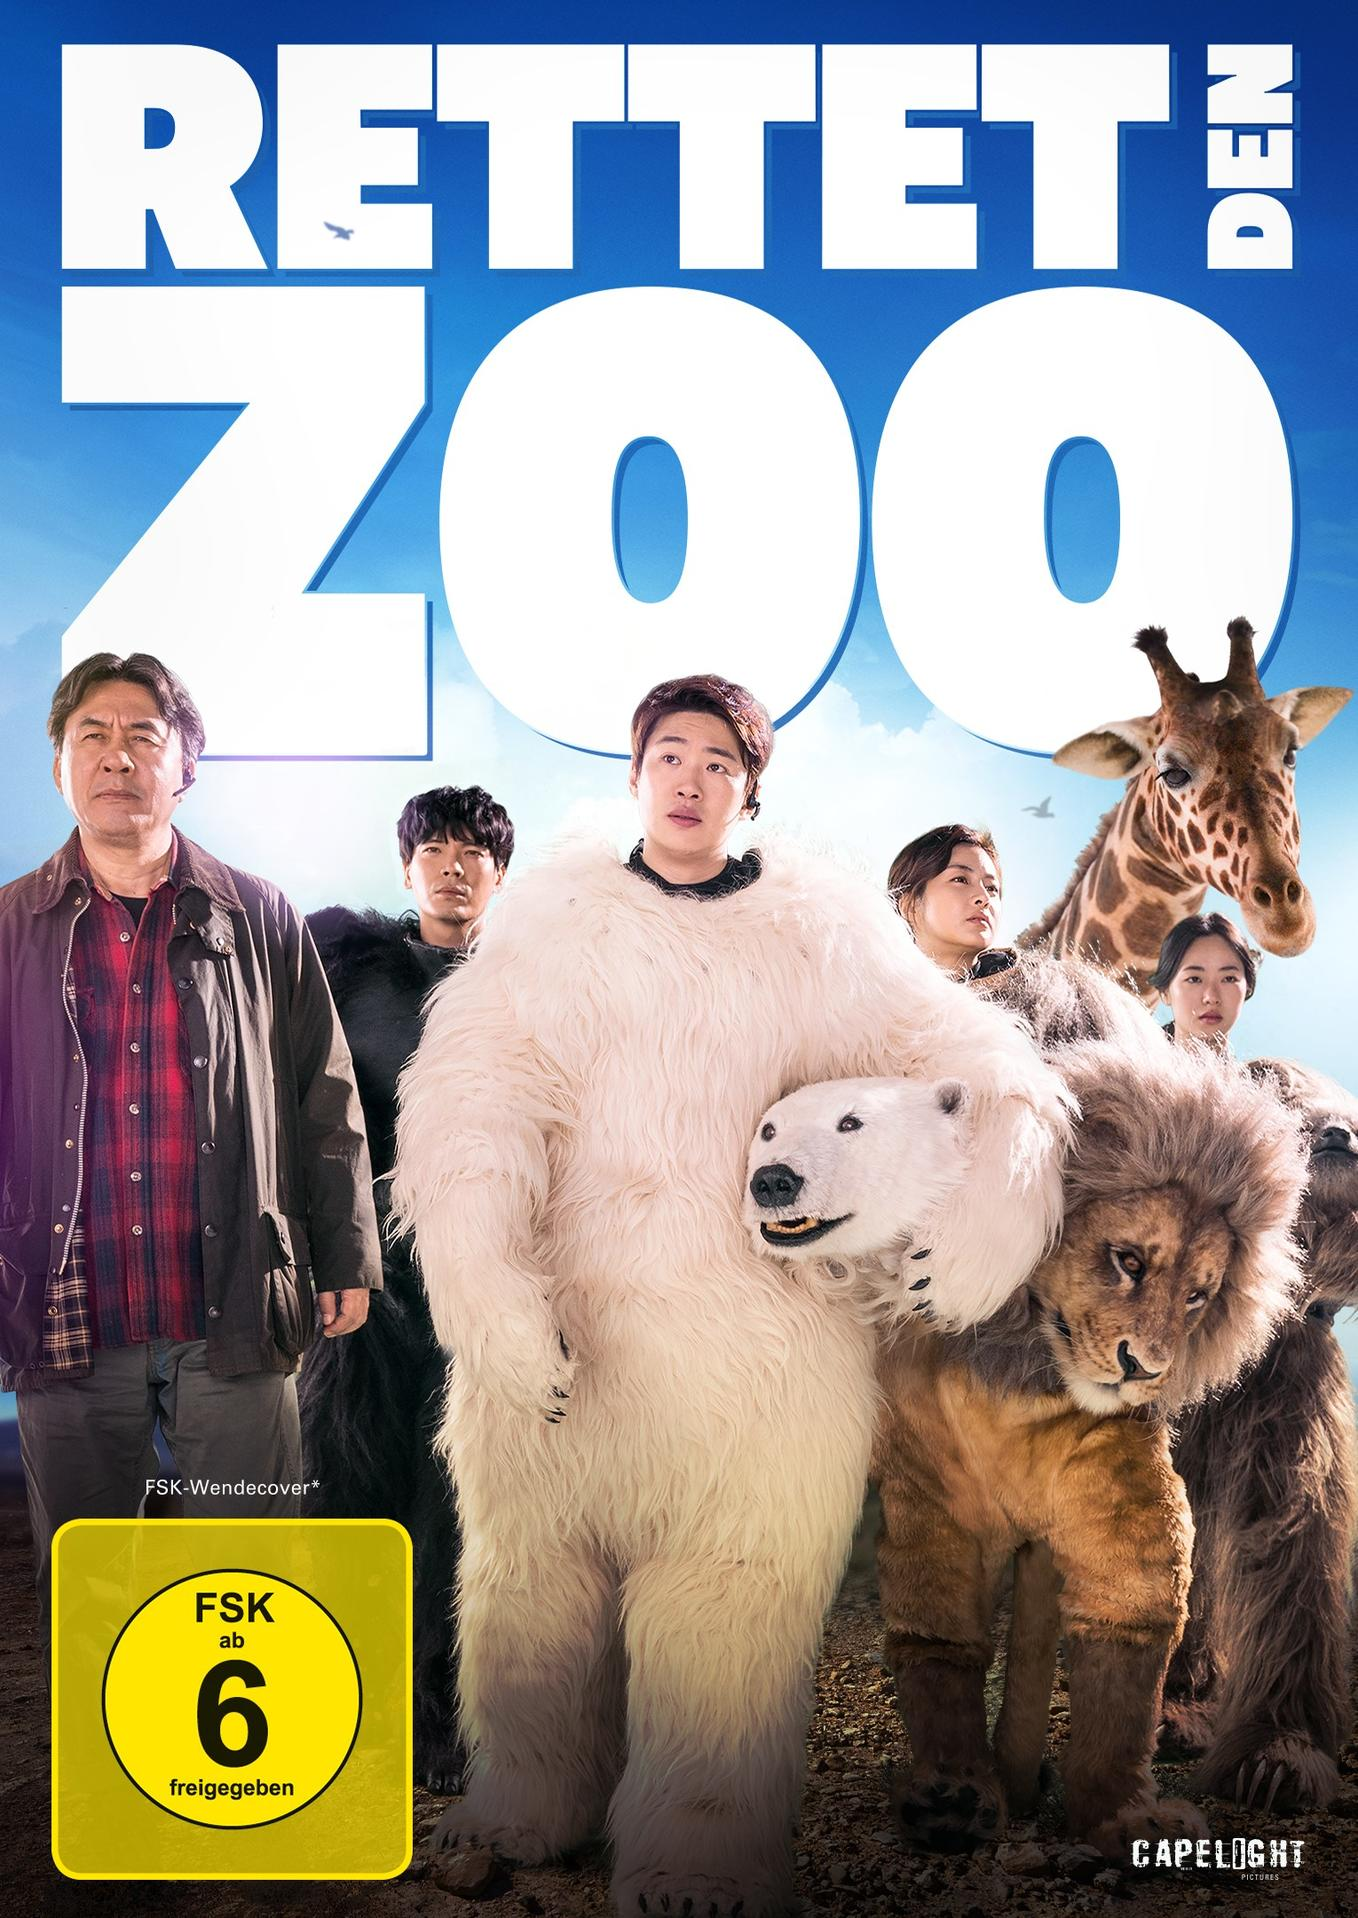 Rettet den Zoo DVD